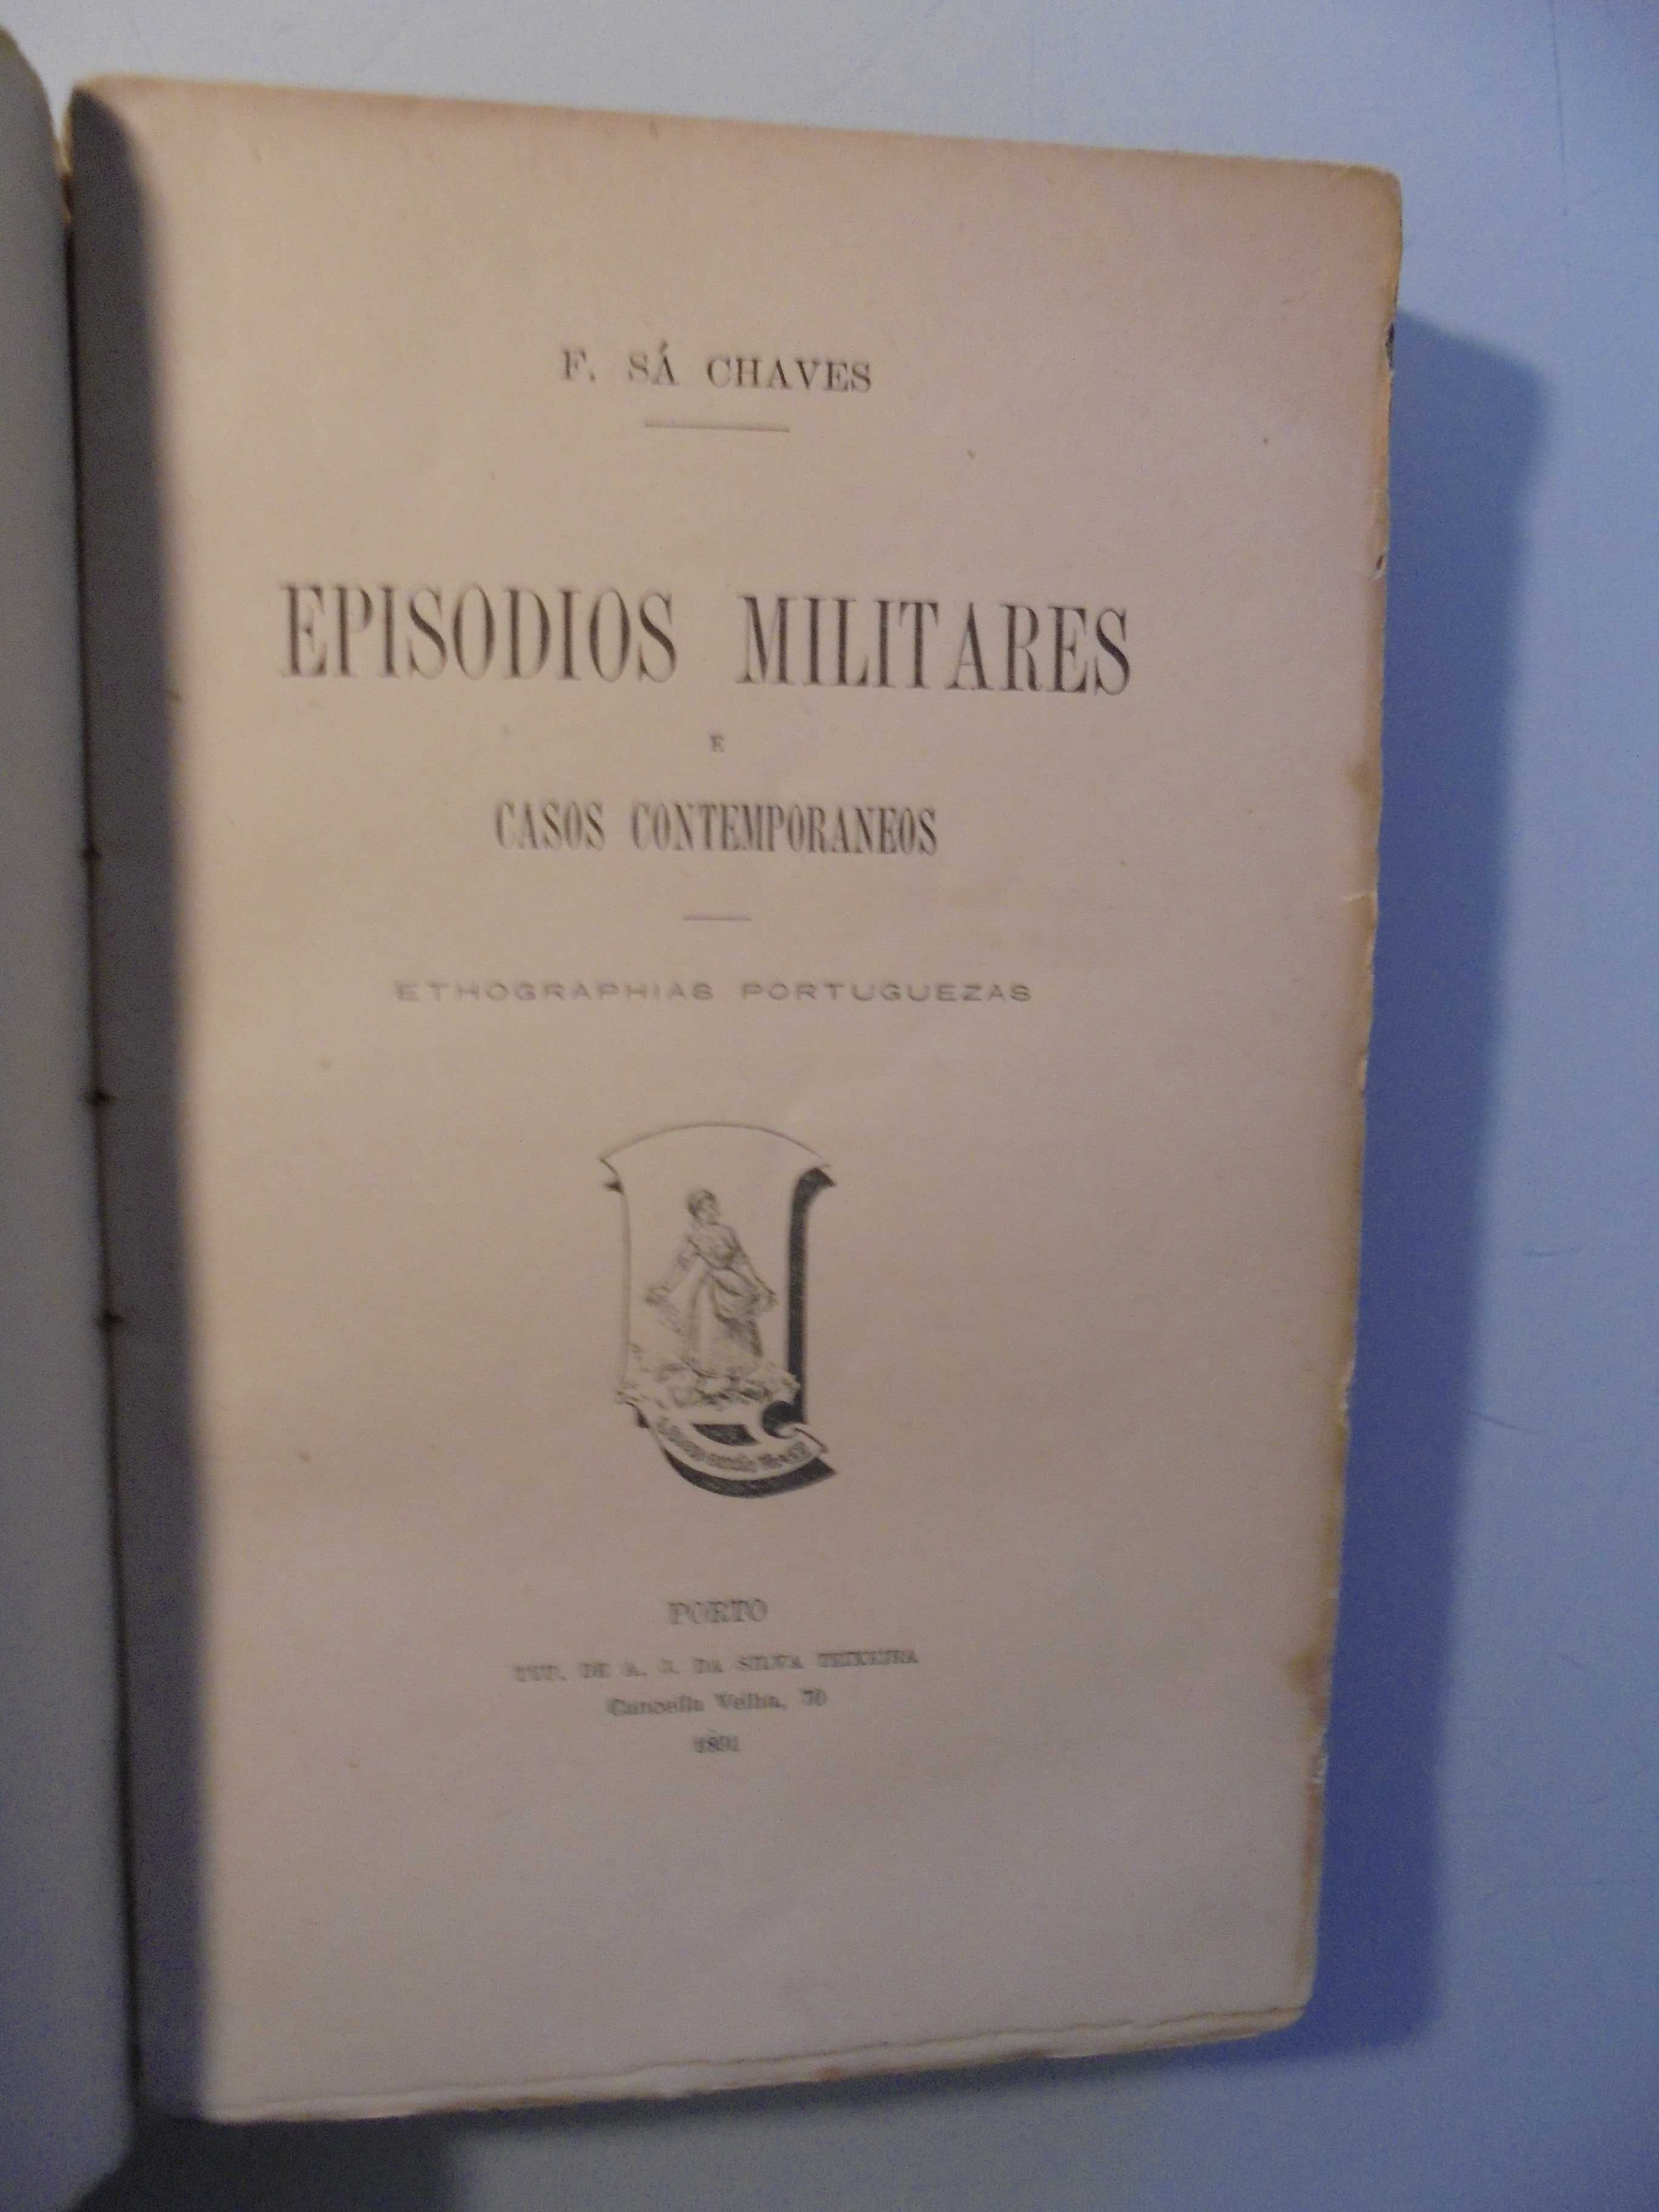 Chaves (F.Sá);Episodios Militares e Casos Contemporaneos